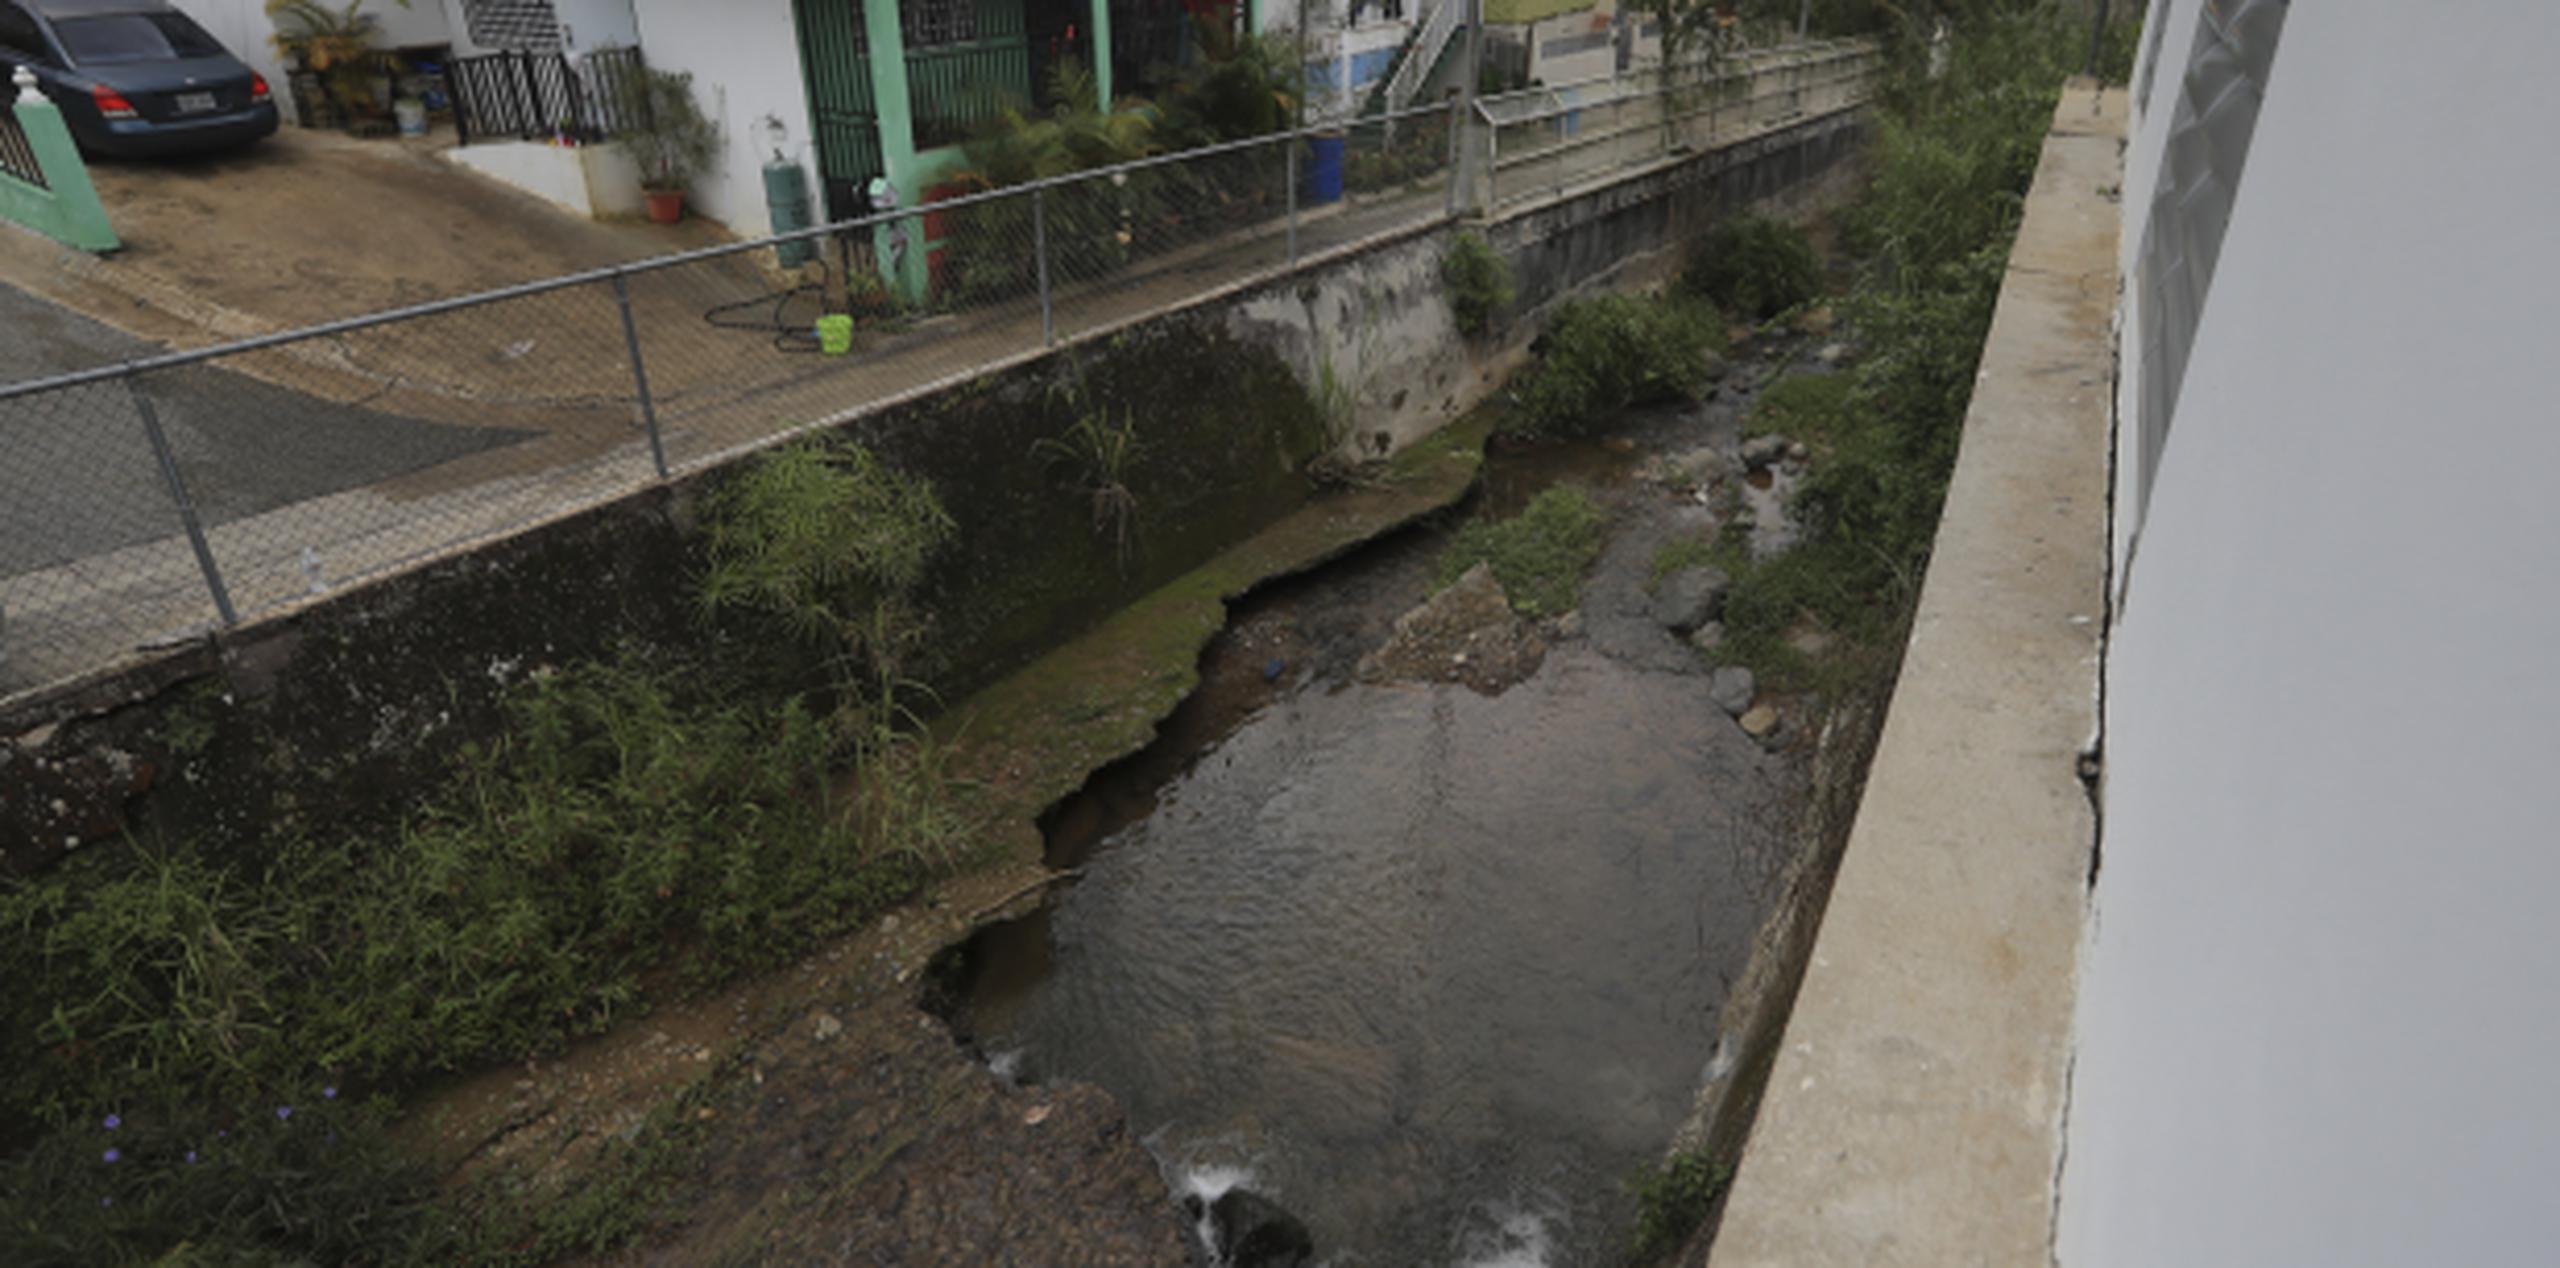 Entre los municipios de Adjuntas y Utuado se estima un presupuesto de $20 millones para arreglar las carreteras. (david.villafane@gfrmedia.com)